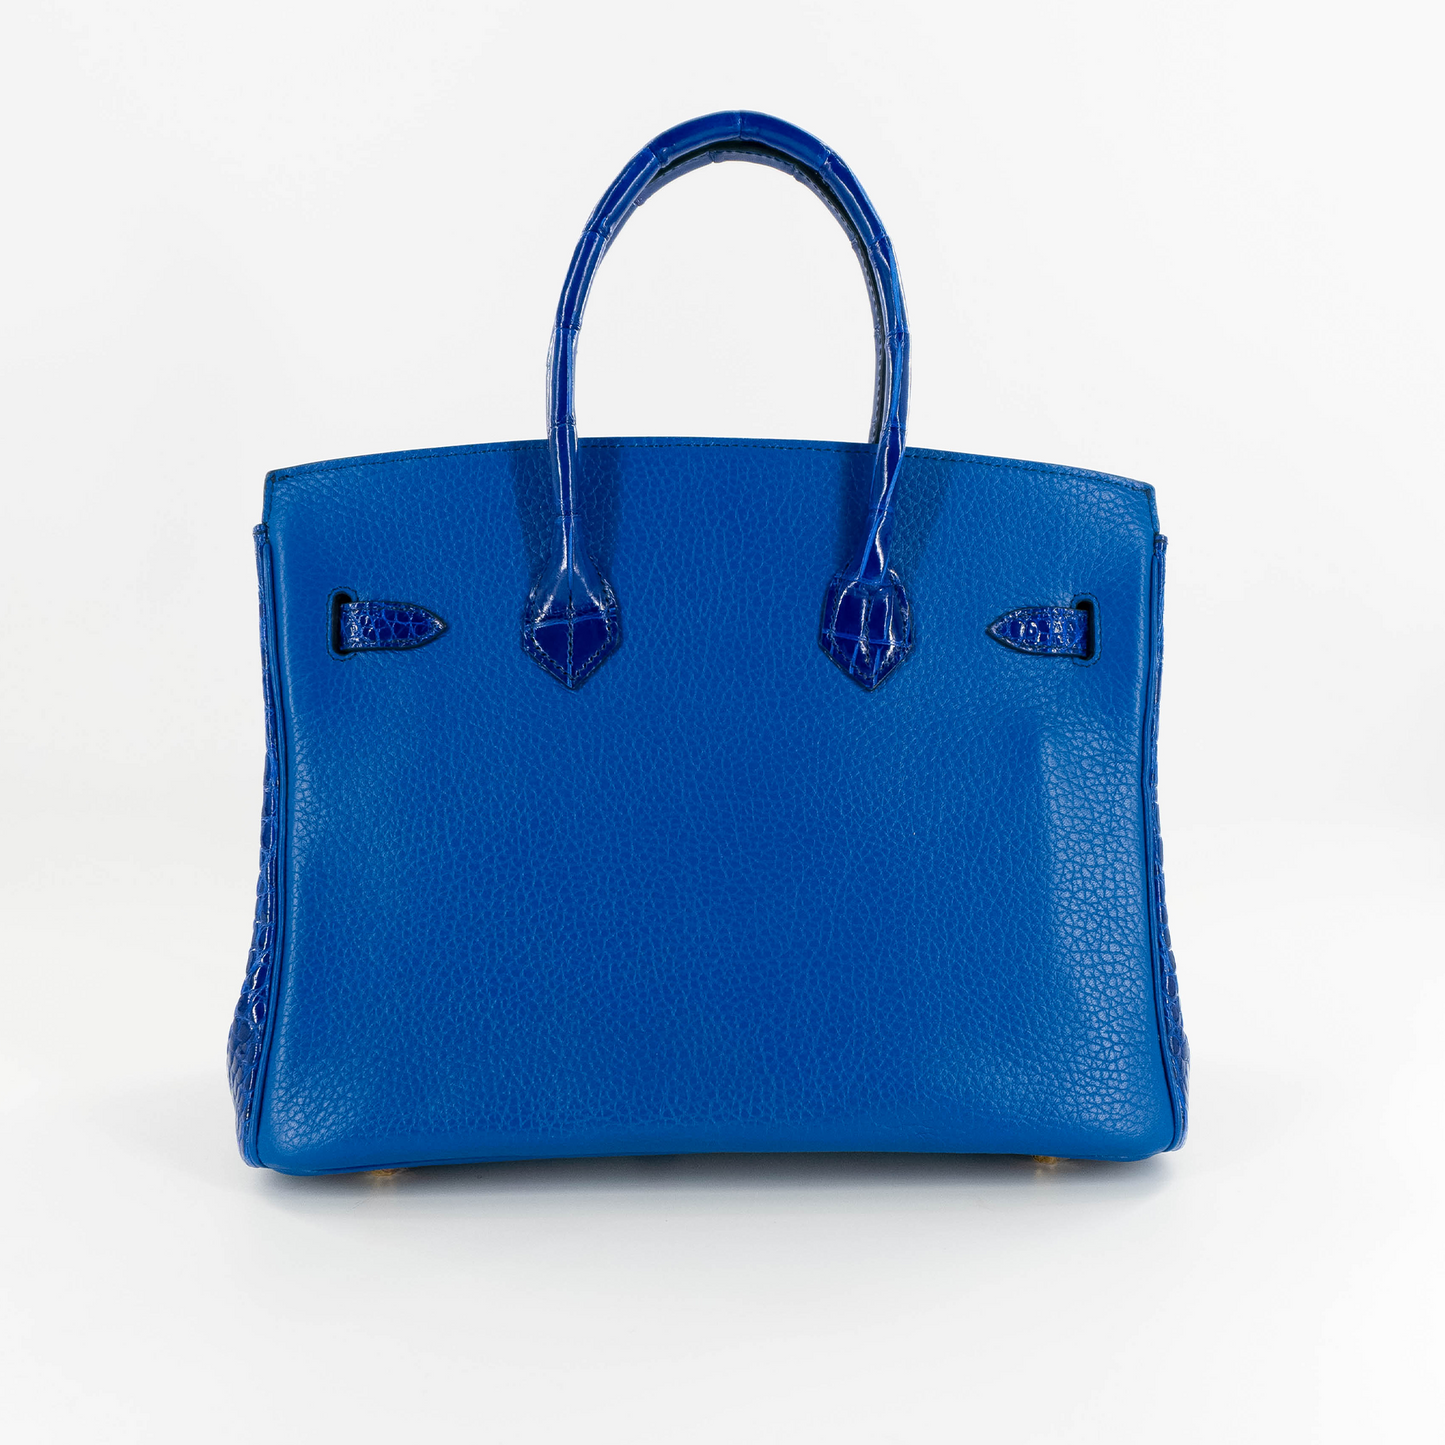 Duchess Handbag in Royal Blue Crocodile Belly Skin & Leather